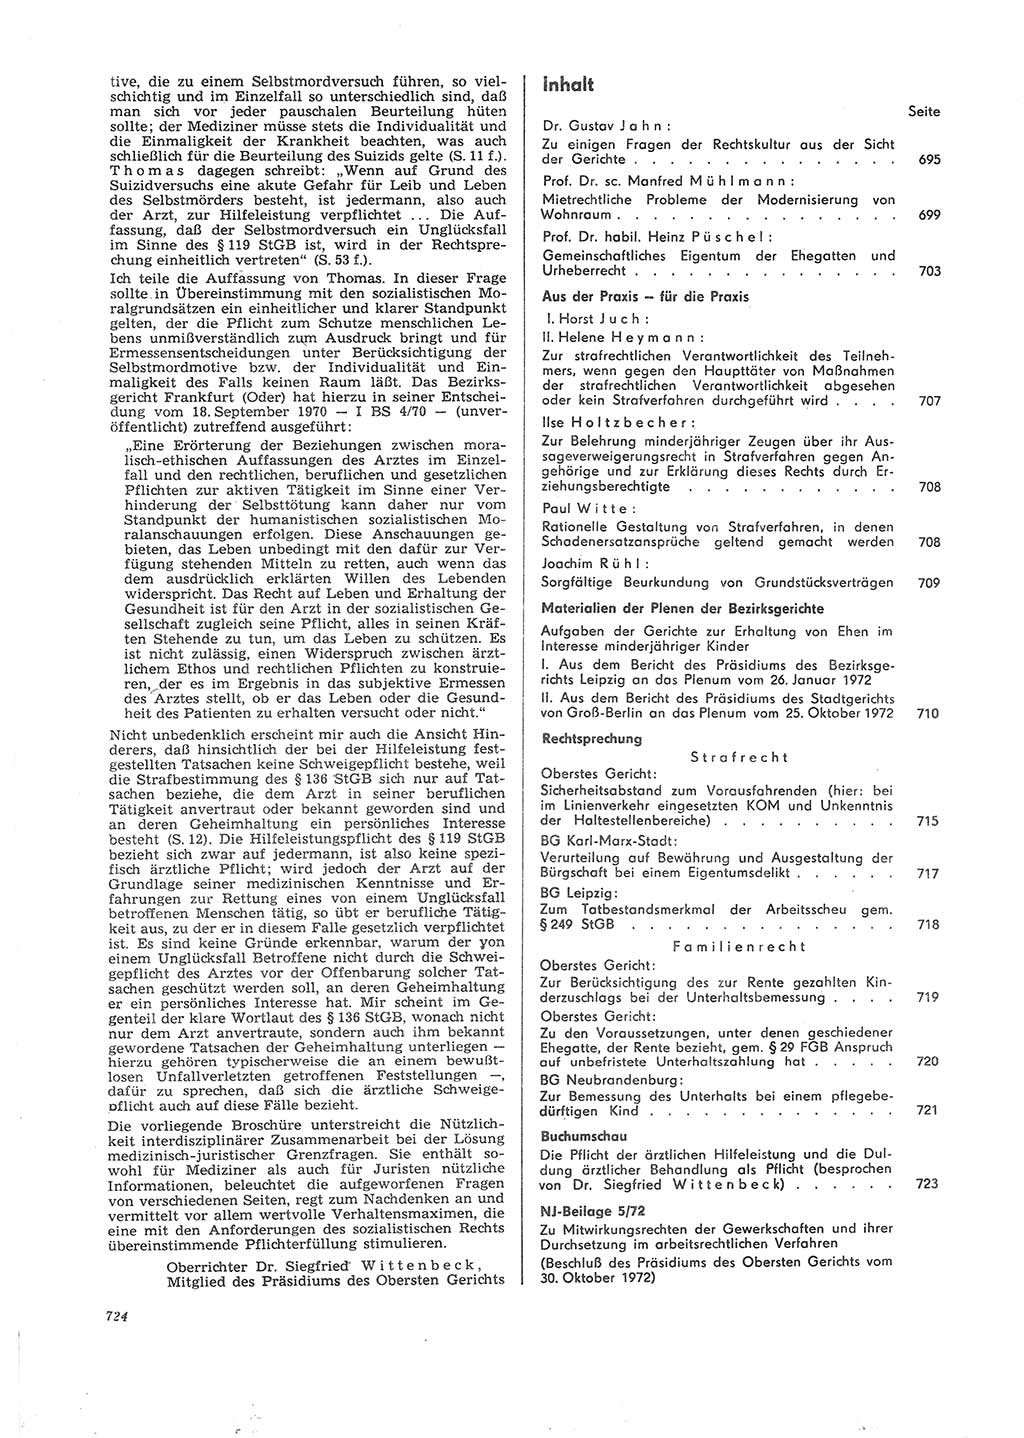 Neue Justiz (NJ), Zeitschrift für Recht und Rechtswissenschaft [Deutsche Demokratische Republik (DDR)], 26. Jahrgang 1972, Seite 724 (NJ DDR 1972, S. 724)